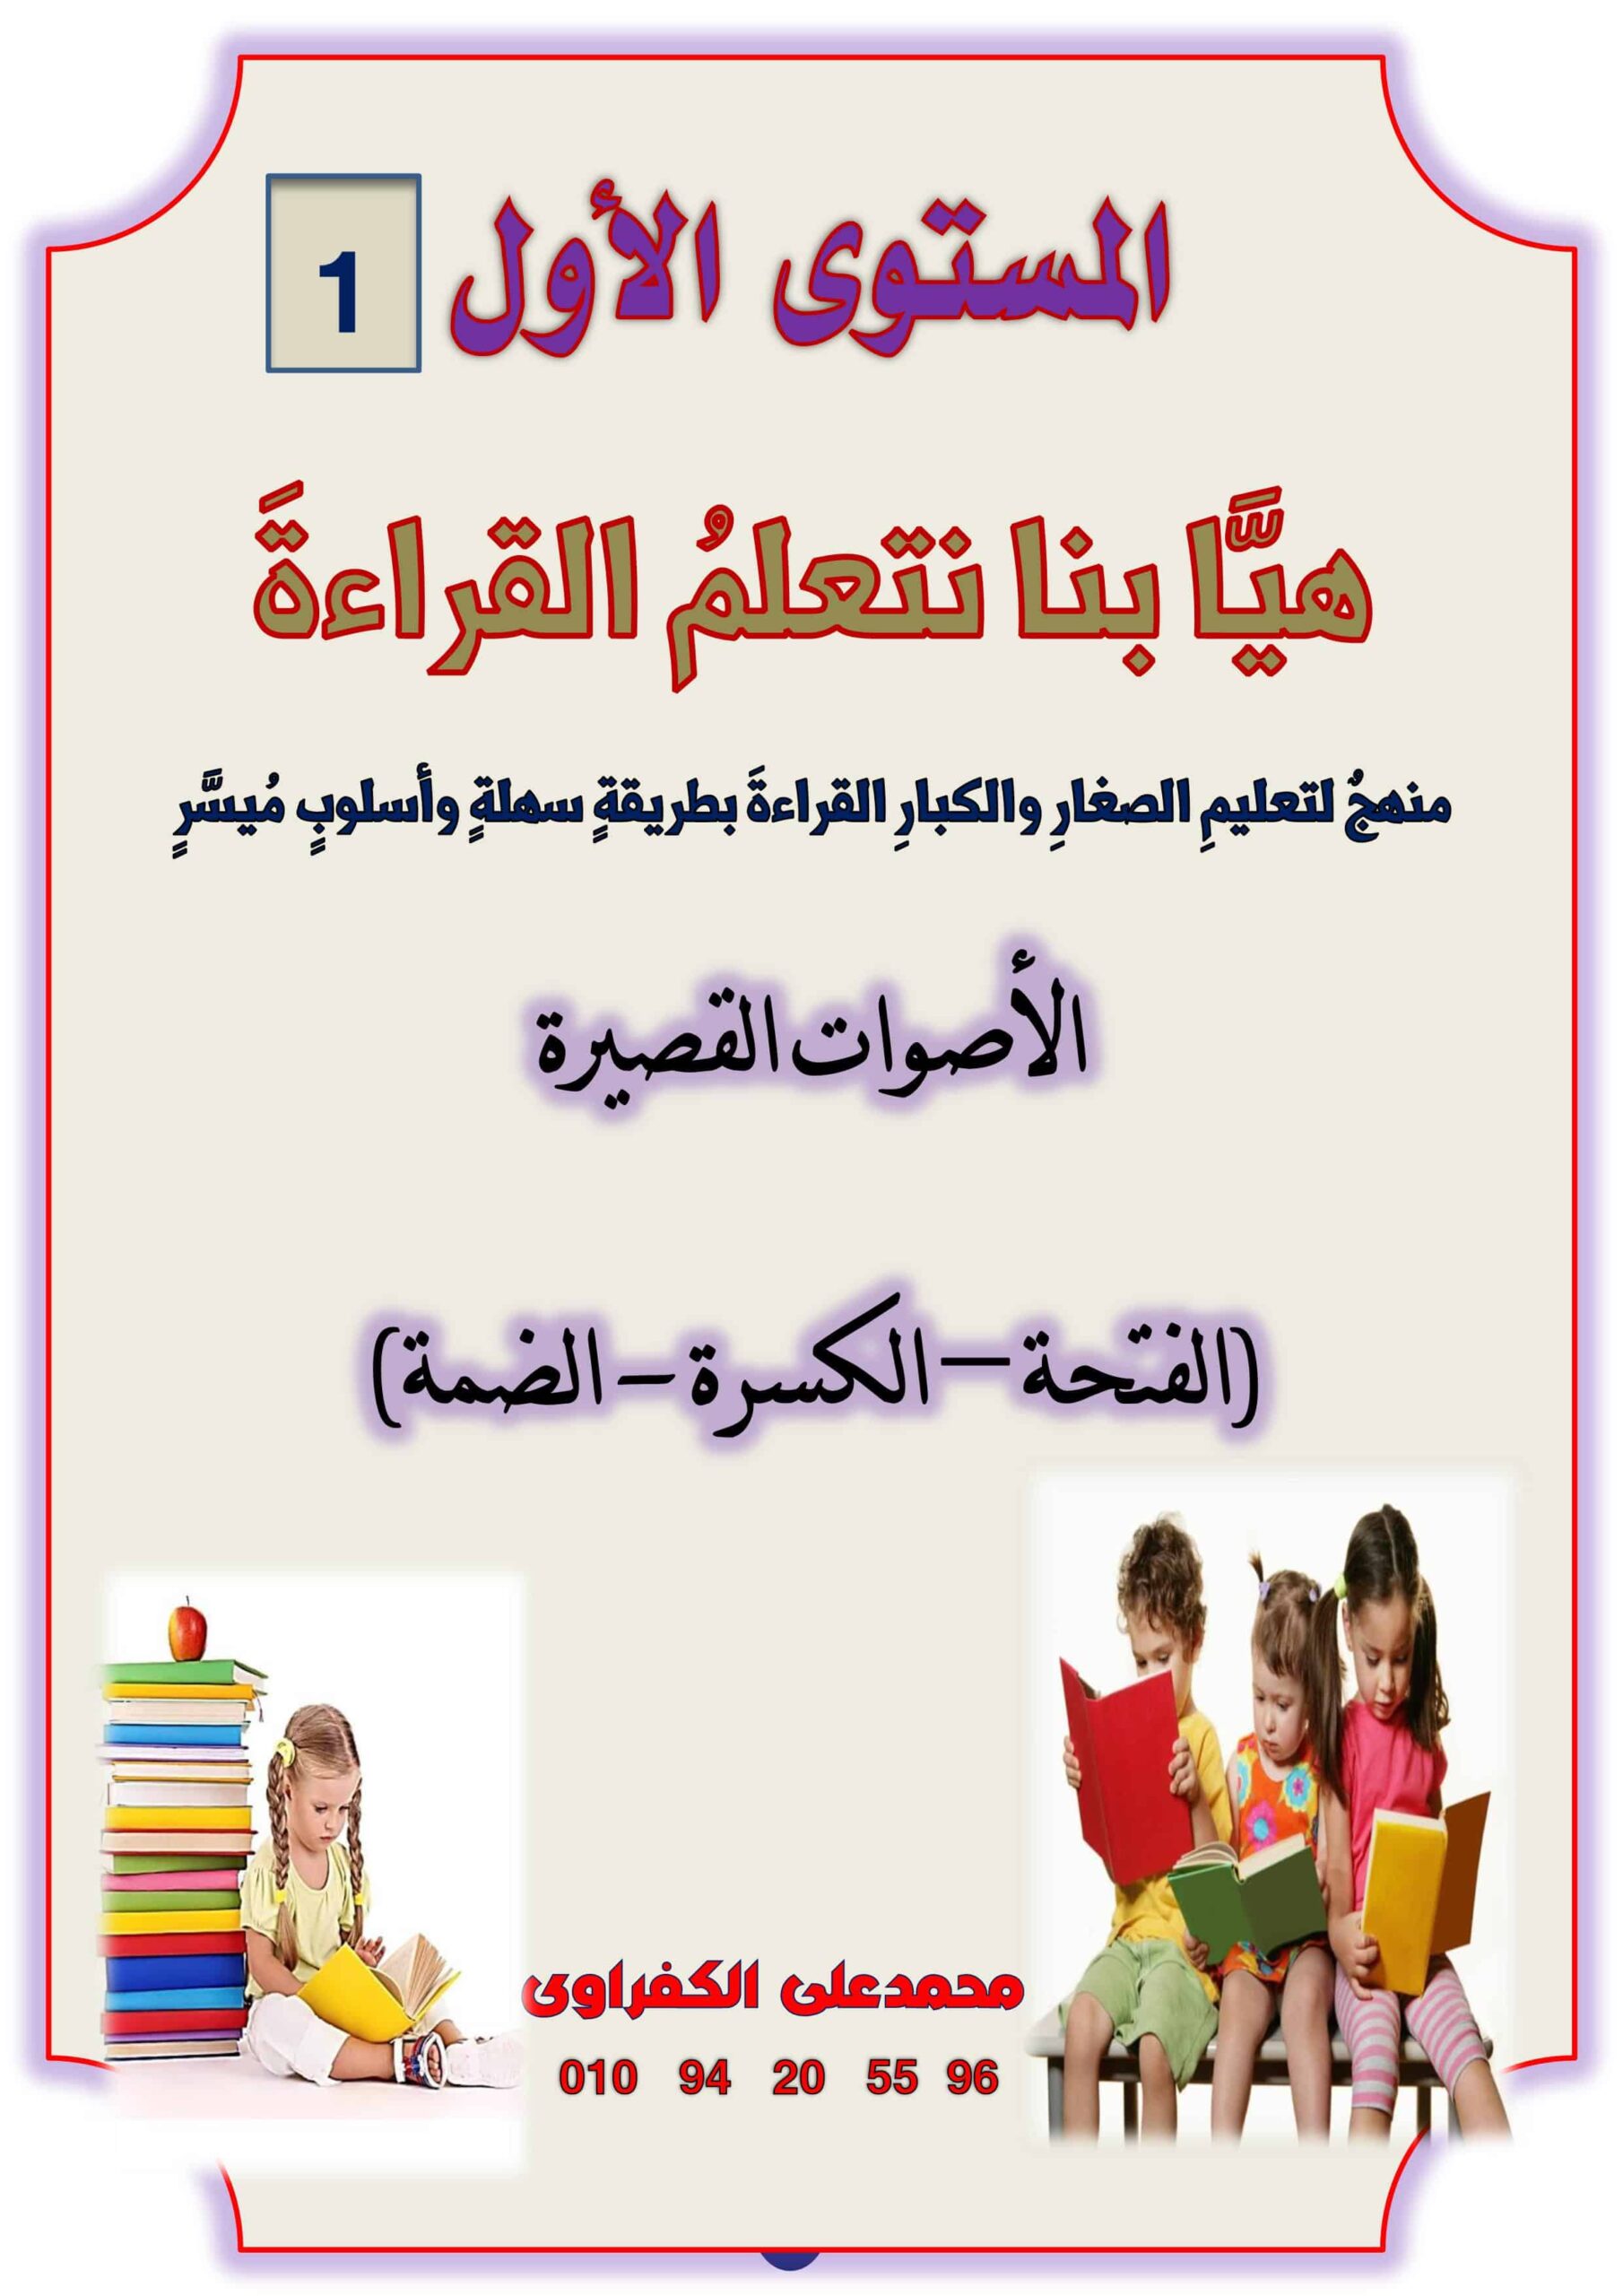 مذكرة هيا بنا نتعلم القراءة المستوى الأول اللغة العربية الصف الأول